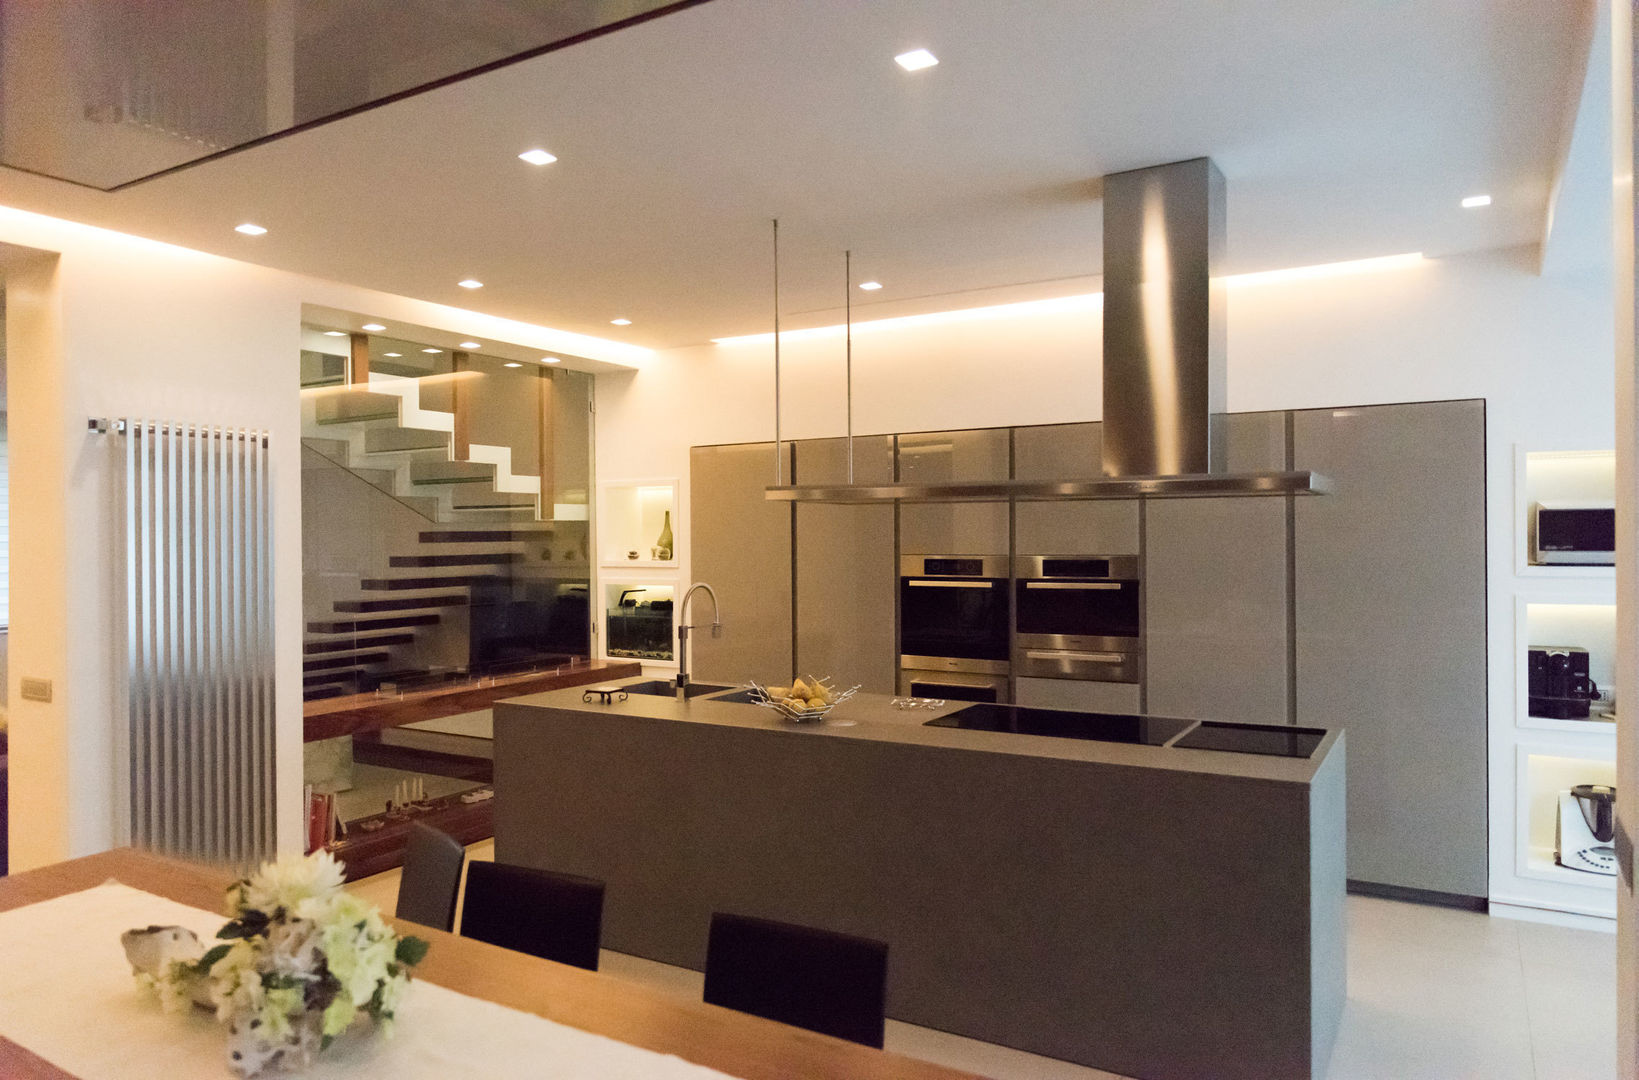 Villa T, Studio Vesce Architettura Studio Vesce Architettura Cocinas modernas: Ideas, imágenes y decoración